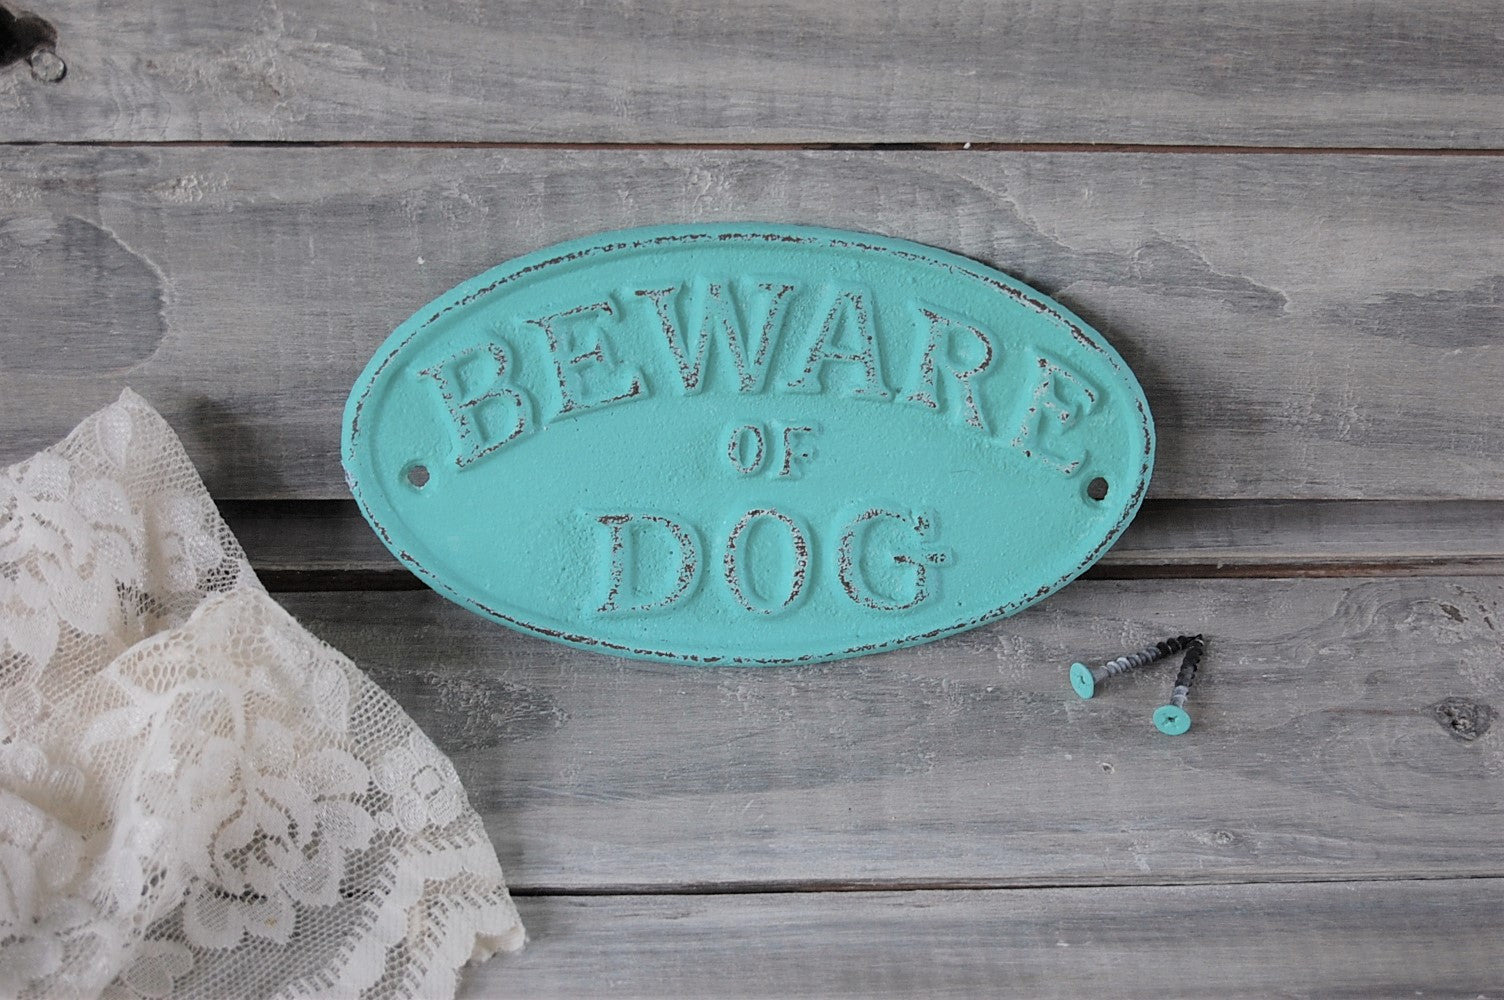 Dog warning sign - The Vintage Artistry